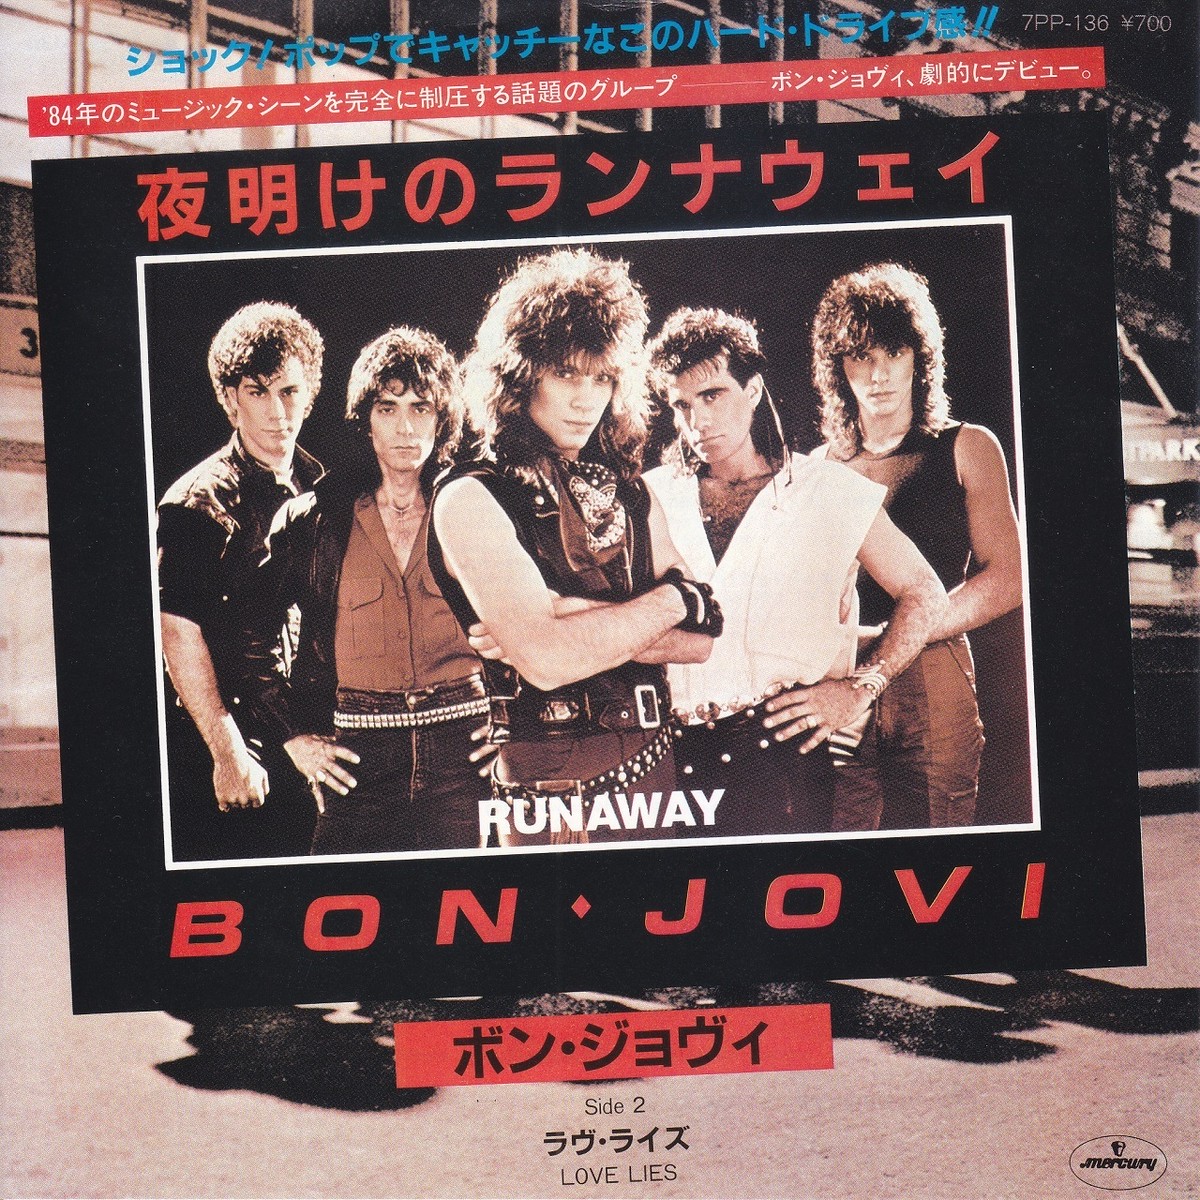 7inch Bon Jovi Runaway 夜明けのランナウェイ ボン ジョヴィ 1984 02 45rpm 45rpm